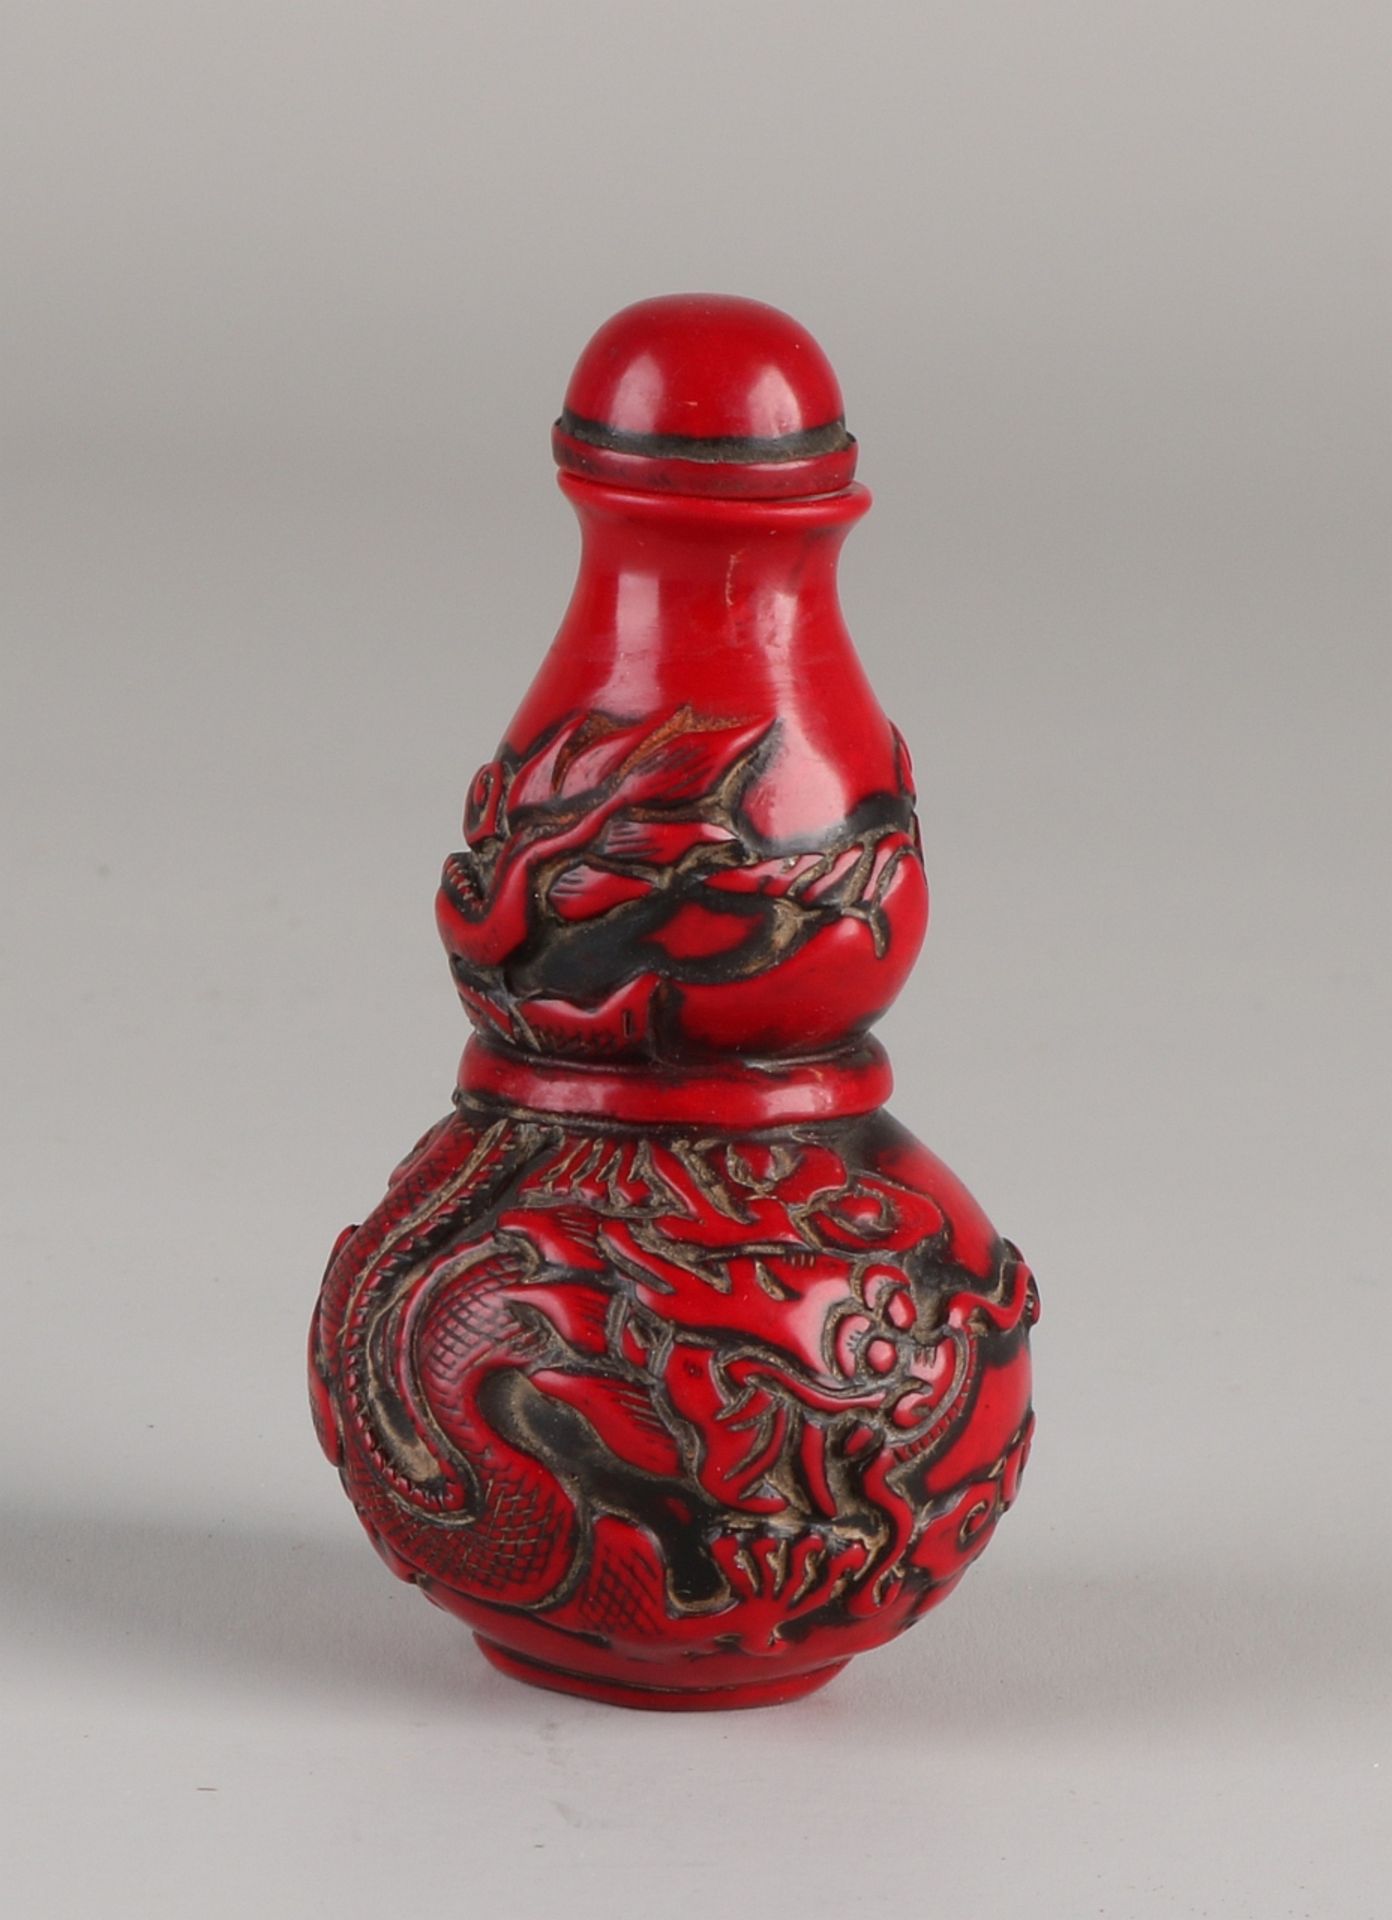 Alte chinesische Schnupftabakflasche aus rotem Lack mit Drachendekoration. Größe: 7,5 cm. In gu